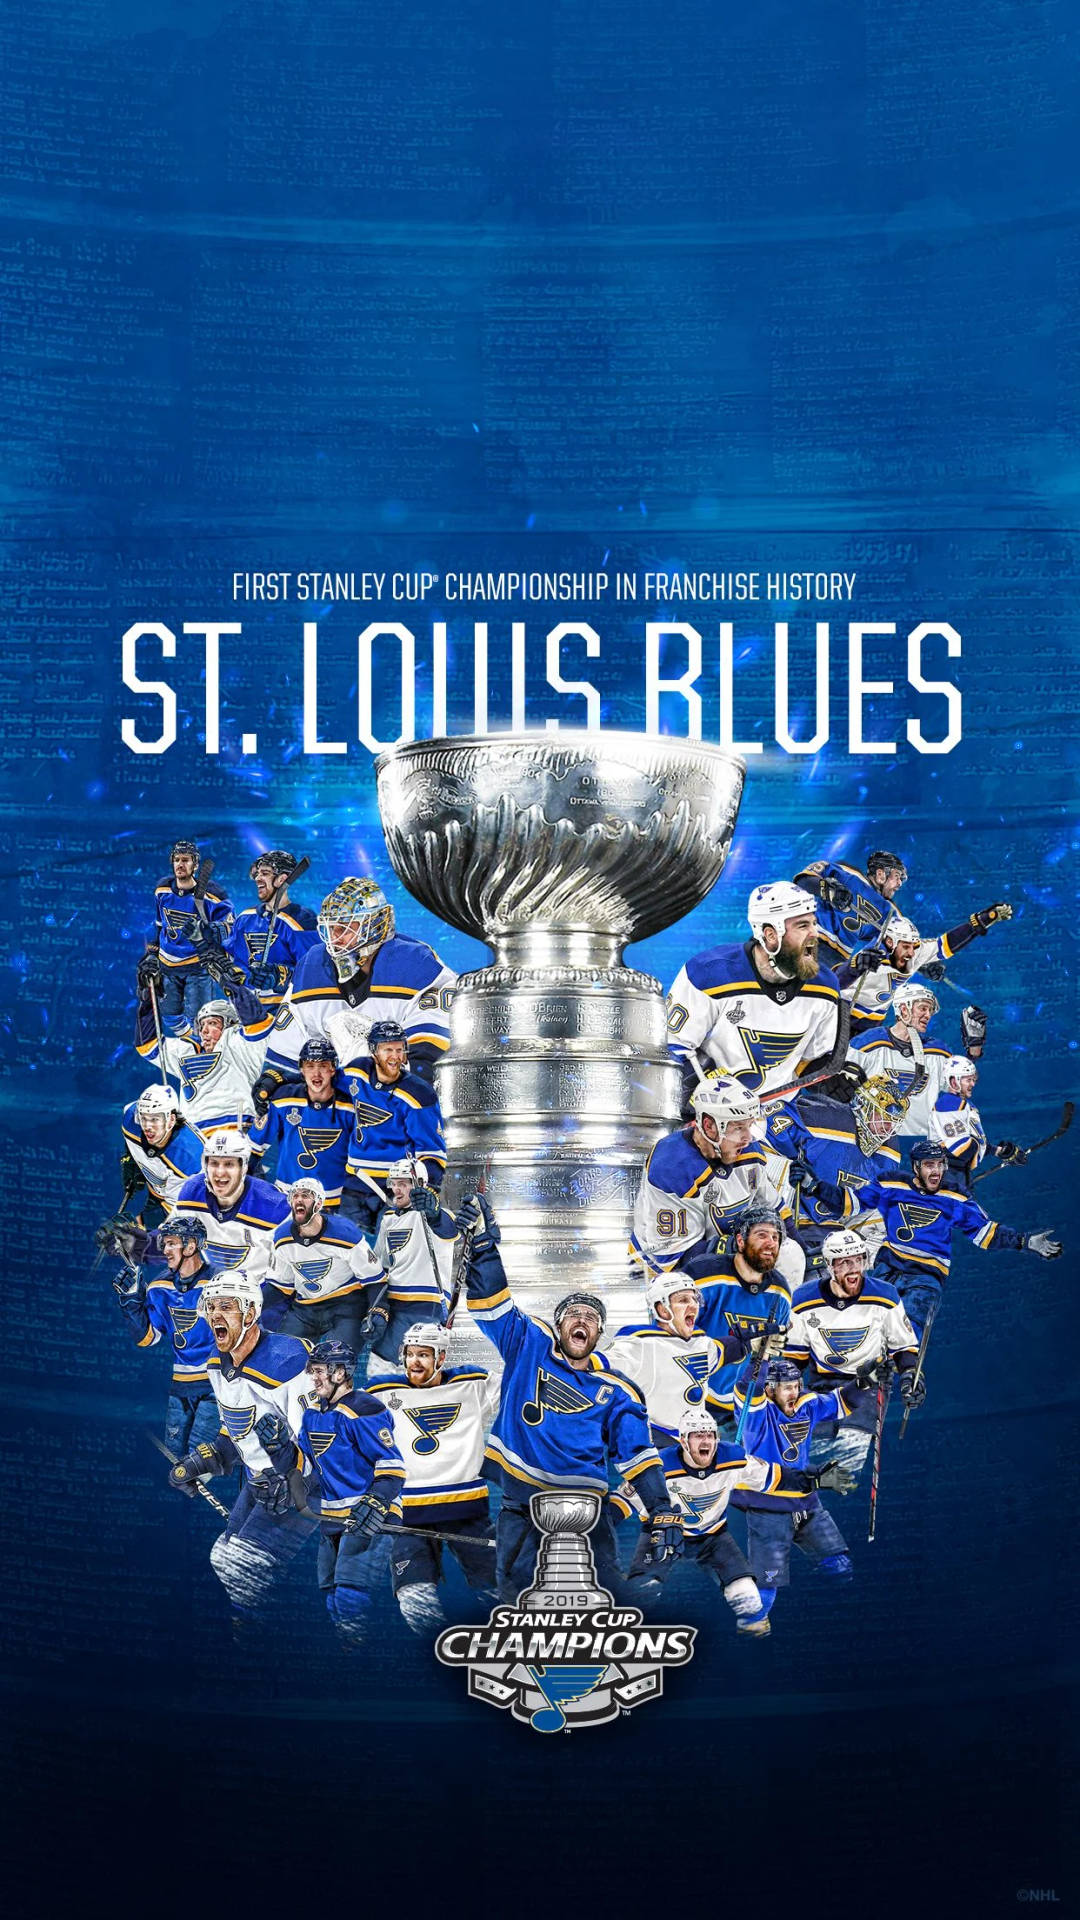 Stanleycup Gewinner St. Louis Blues. Wallpaper